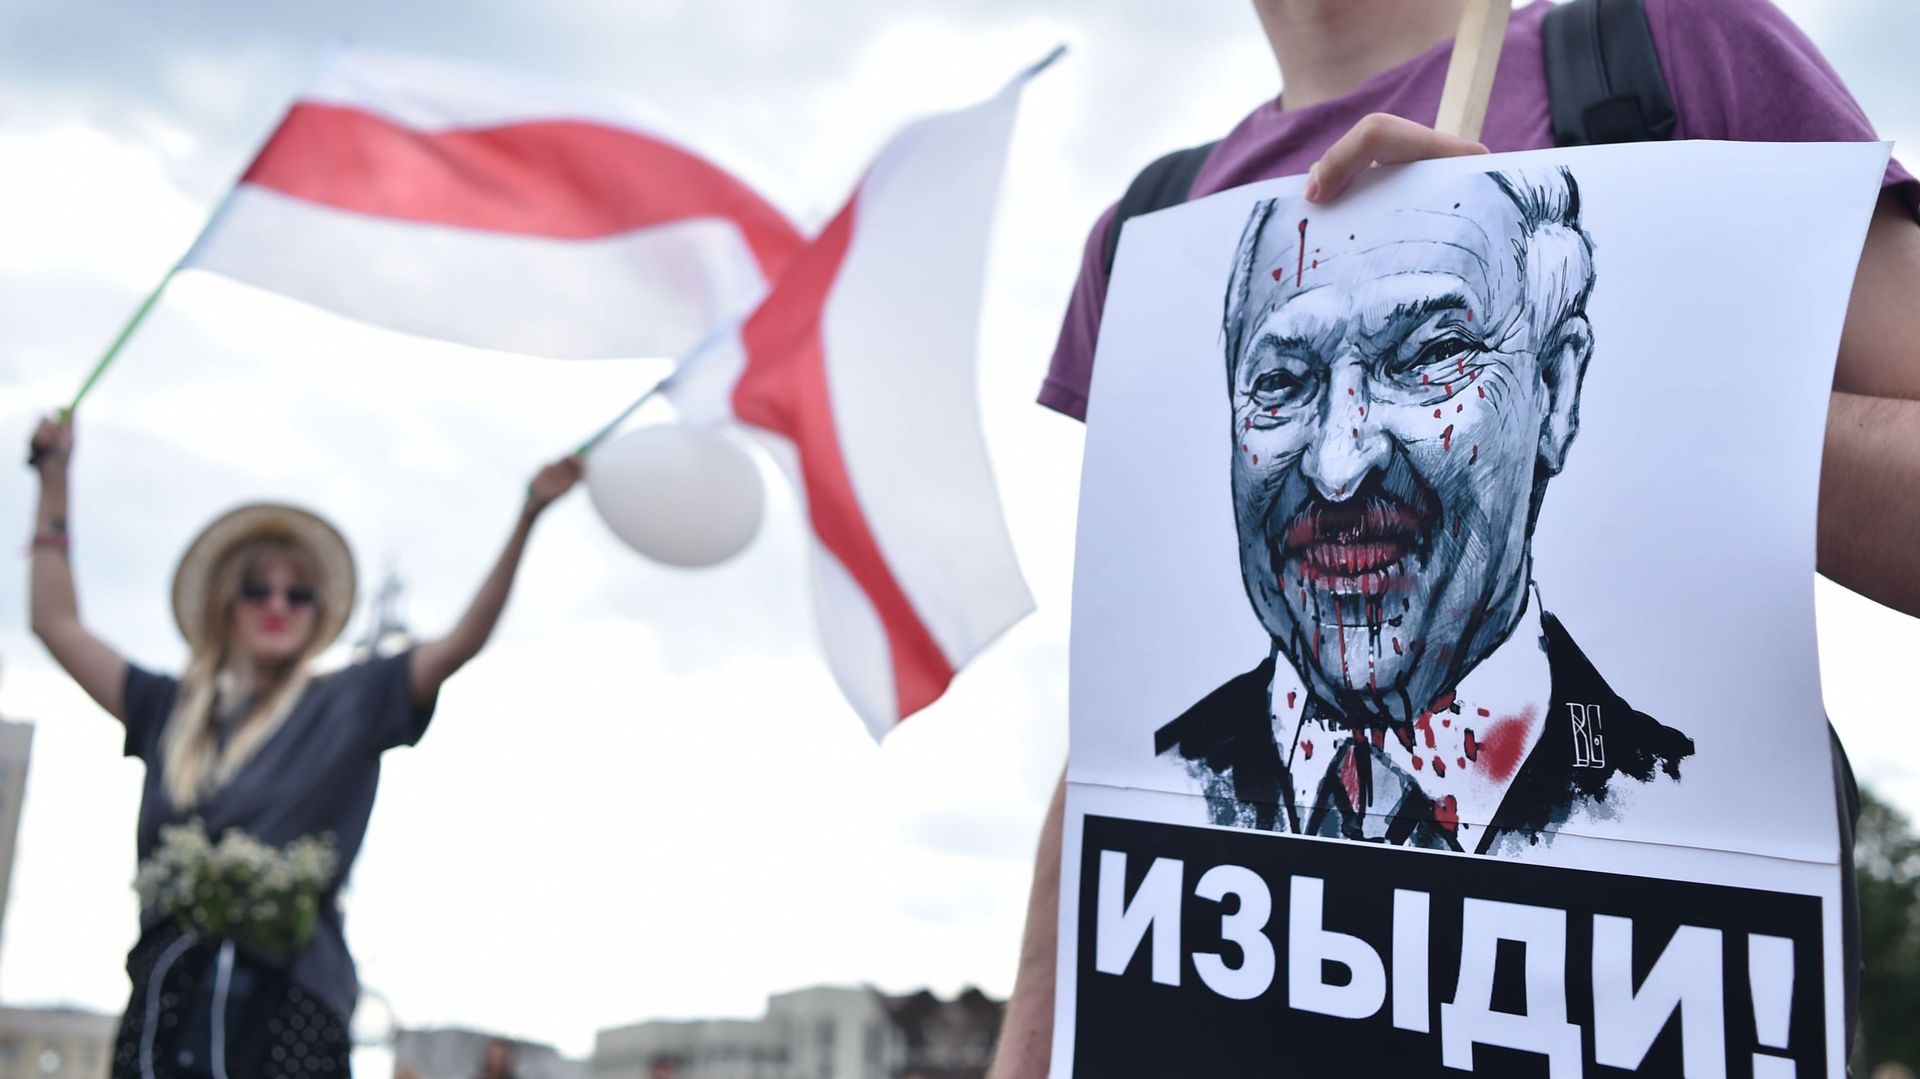 Biélorussie: le président Loukachenko veut s'entretenir avec Poutine et dénonce des "interférences extérieures"